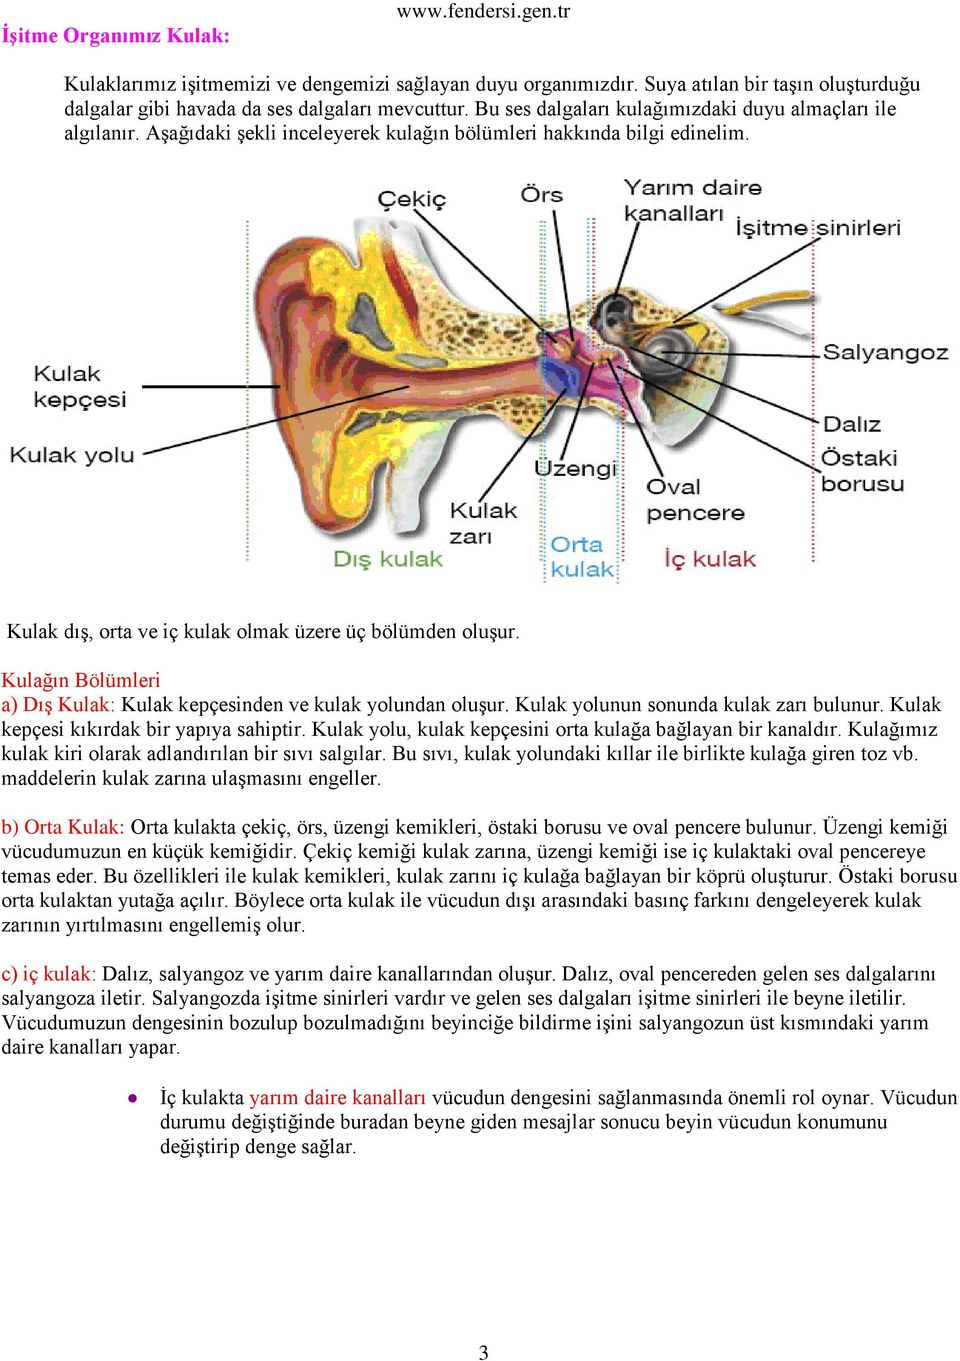 Kulağın Bölümleri a) Dış Kulak: Kulak kepçesinden ve kulak yolundan oluşur. Kulak yolunun sonunda kulak zarı bulunur. Kulak kepçesi kıkırdak bir yapıya sahiptir.